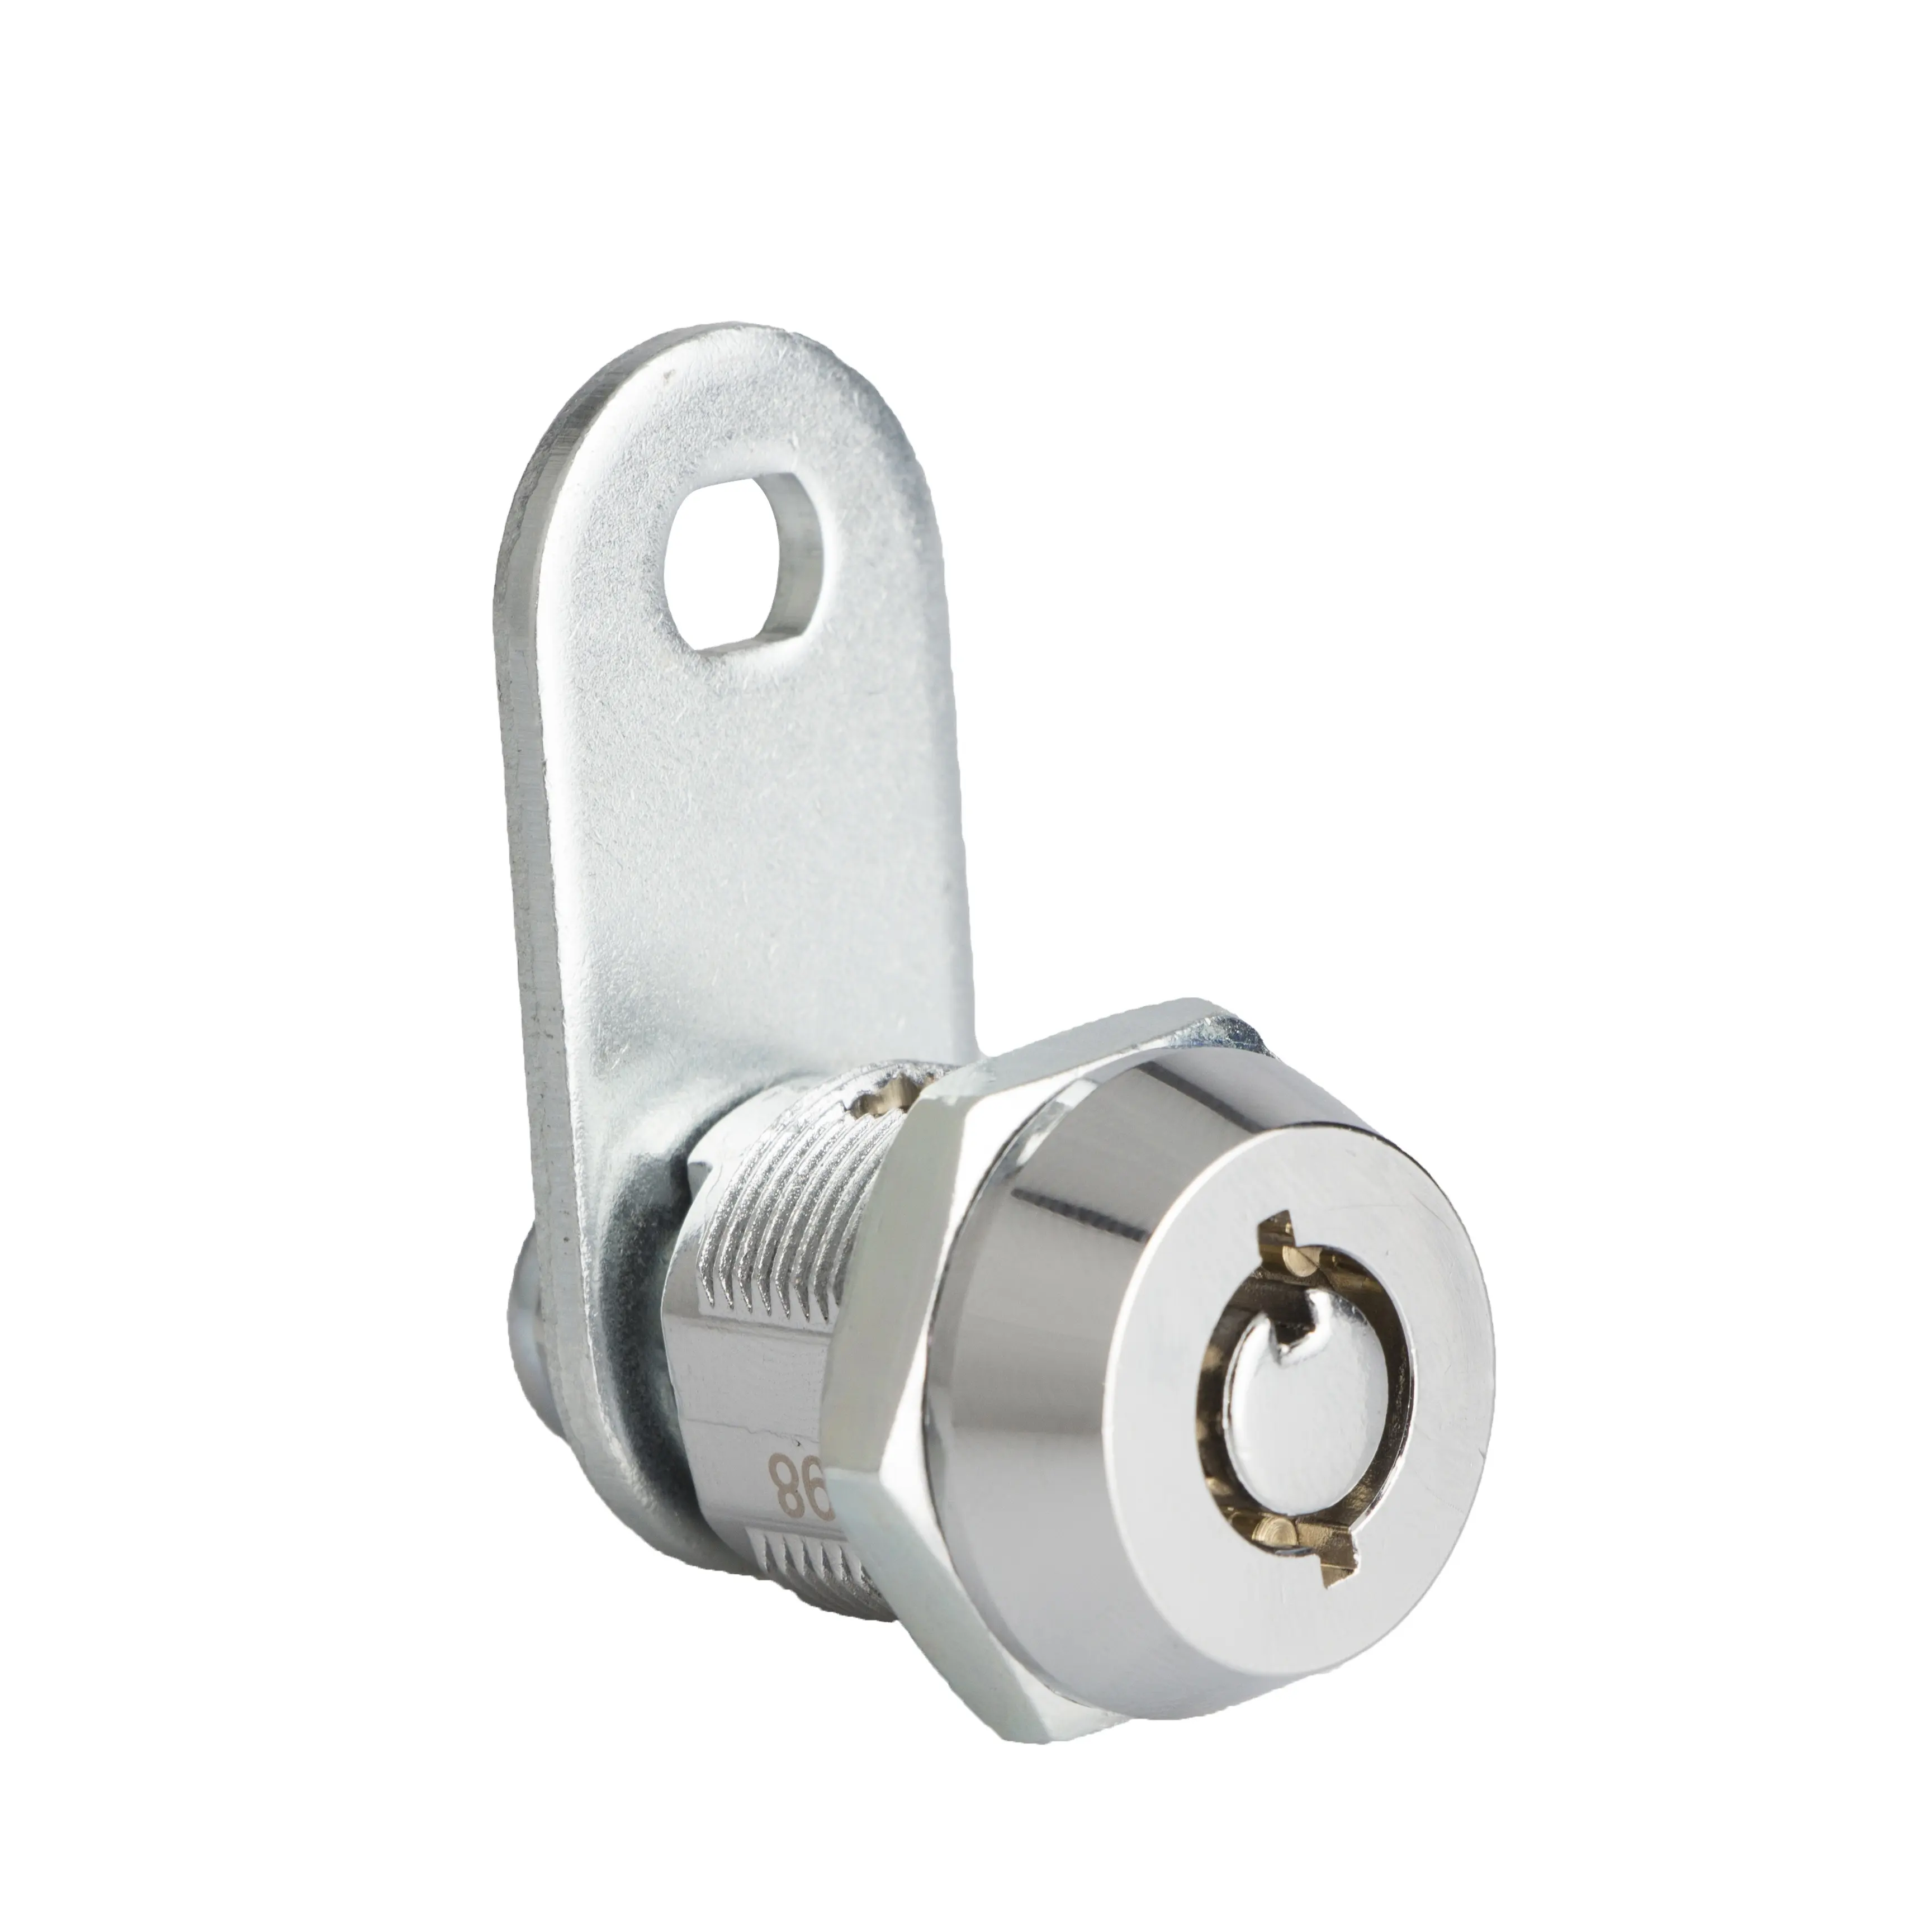 JK500 Camlocks mit einem Sicherheits schlüssel alle billigen Schlüssel verschiedene Cam Lock Zylinder Schließfach Schlüssels chloss für Schrank